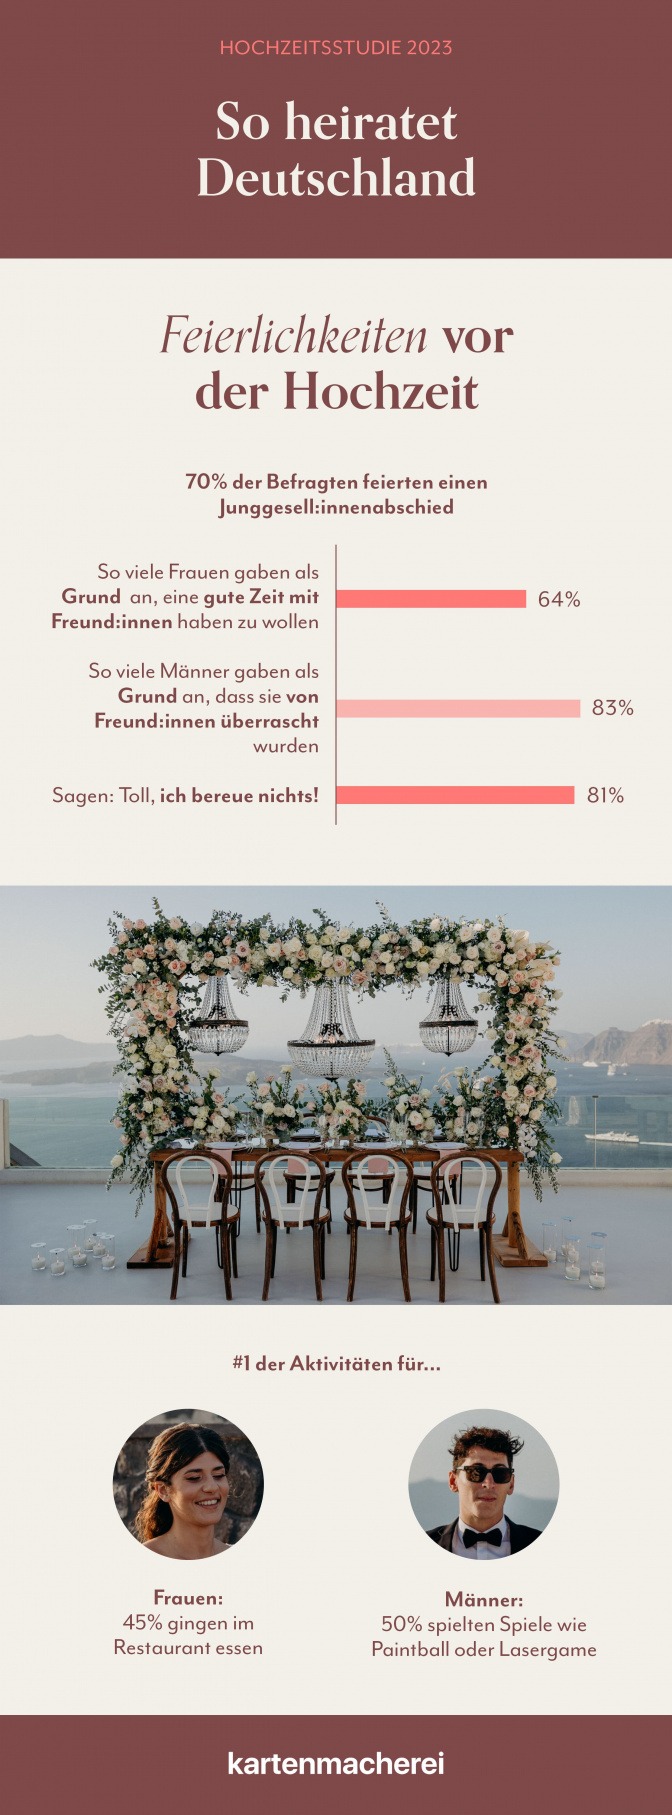 Grafik zeigt Studienergebnisse zum Feiern vor der Hochzeit